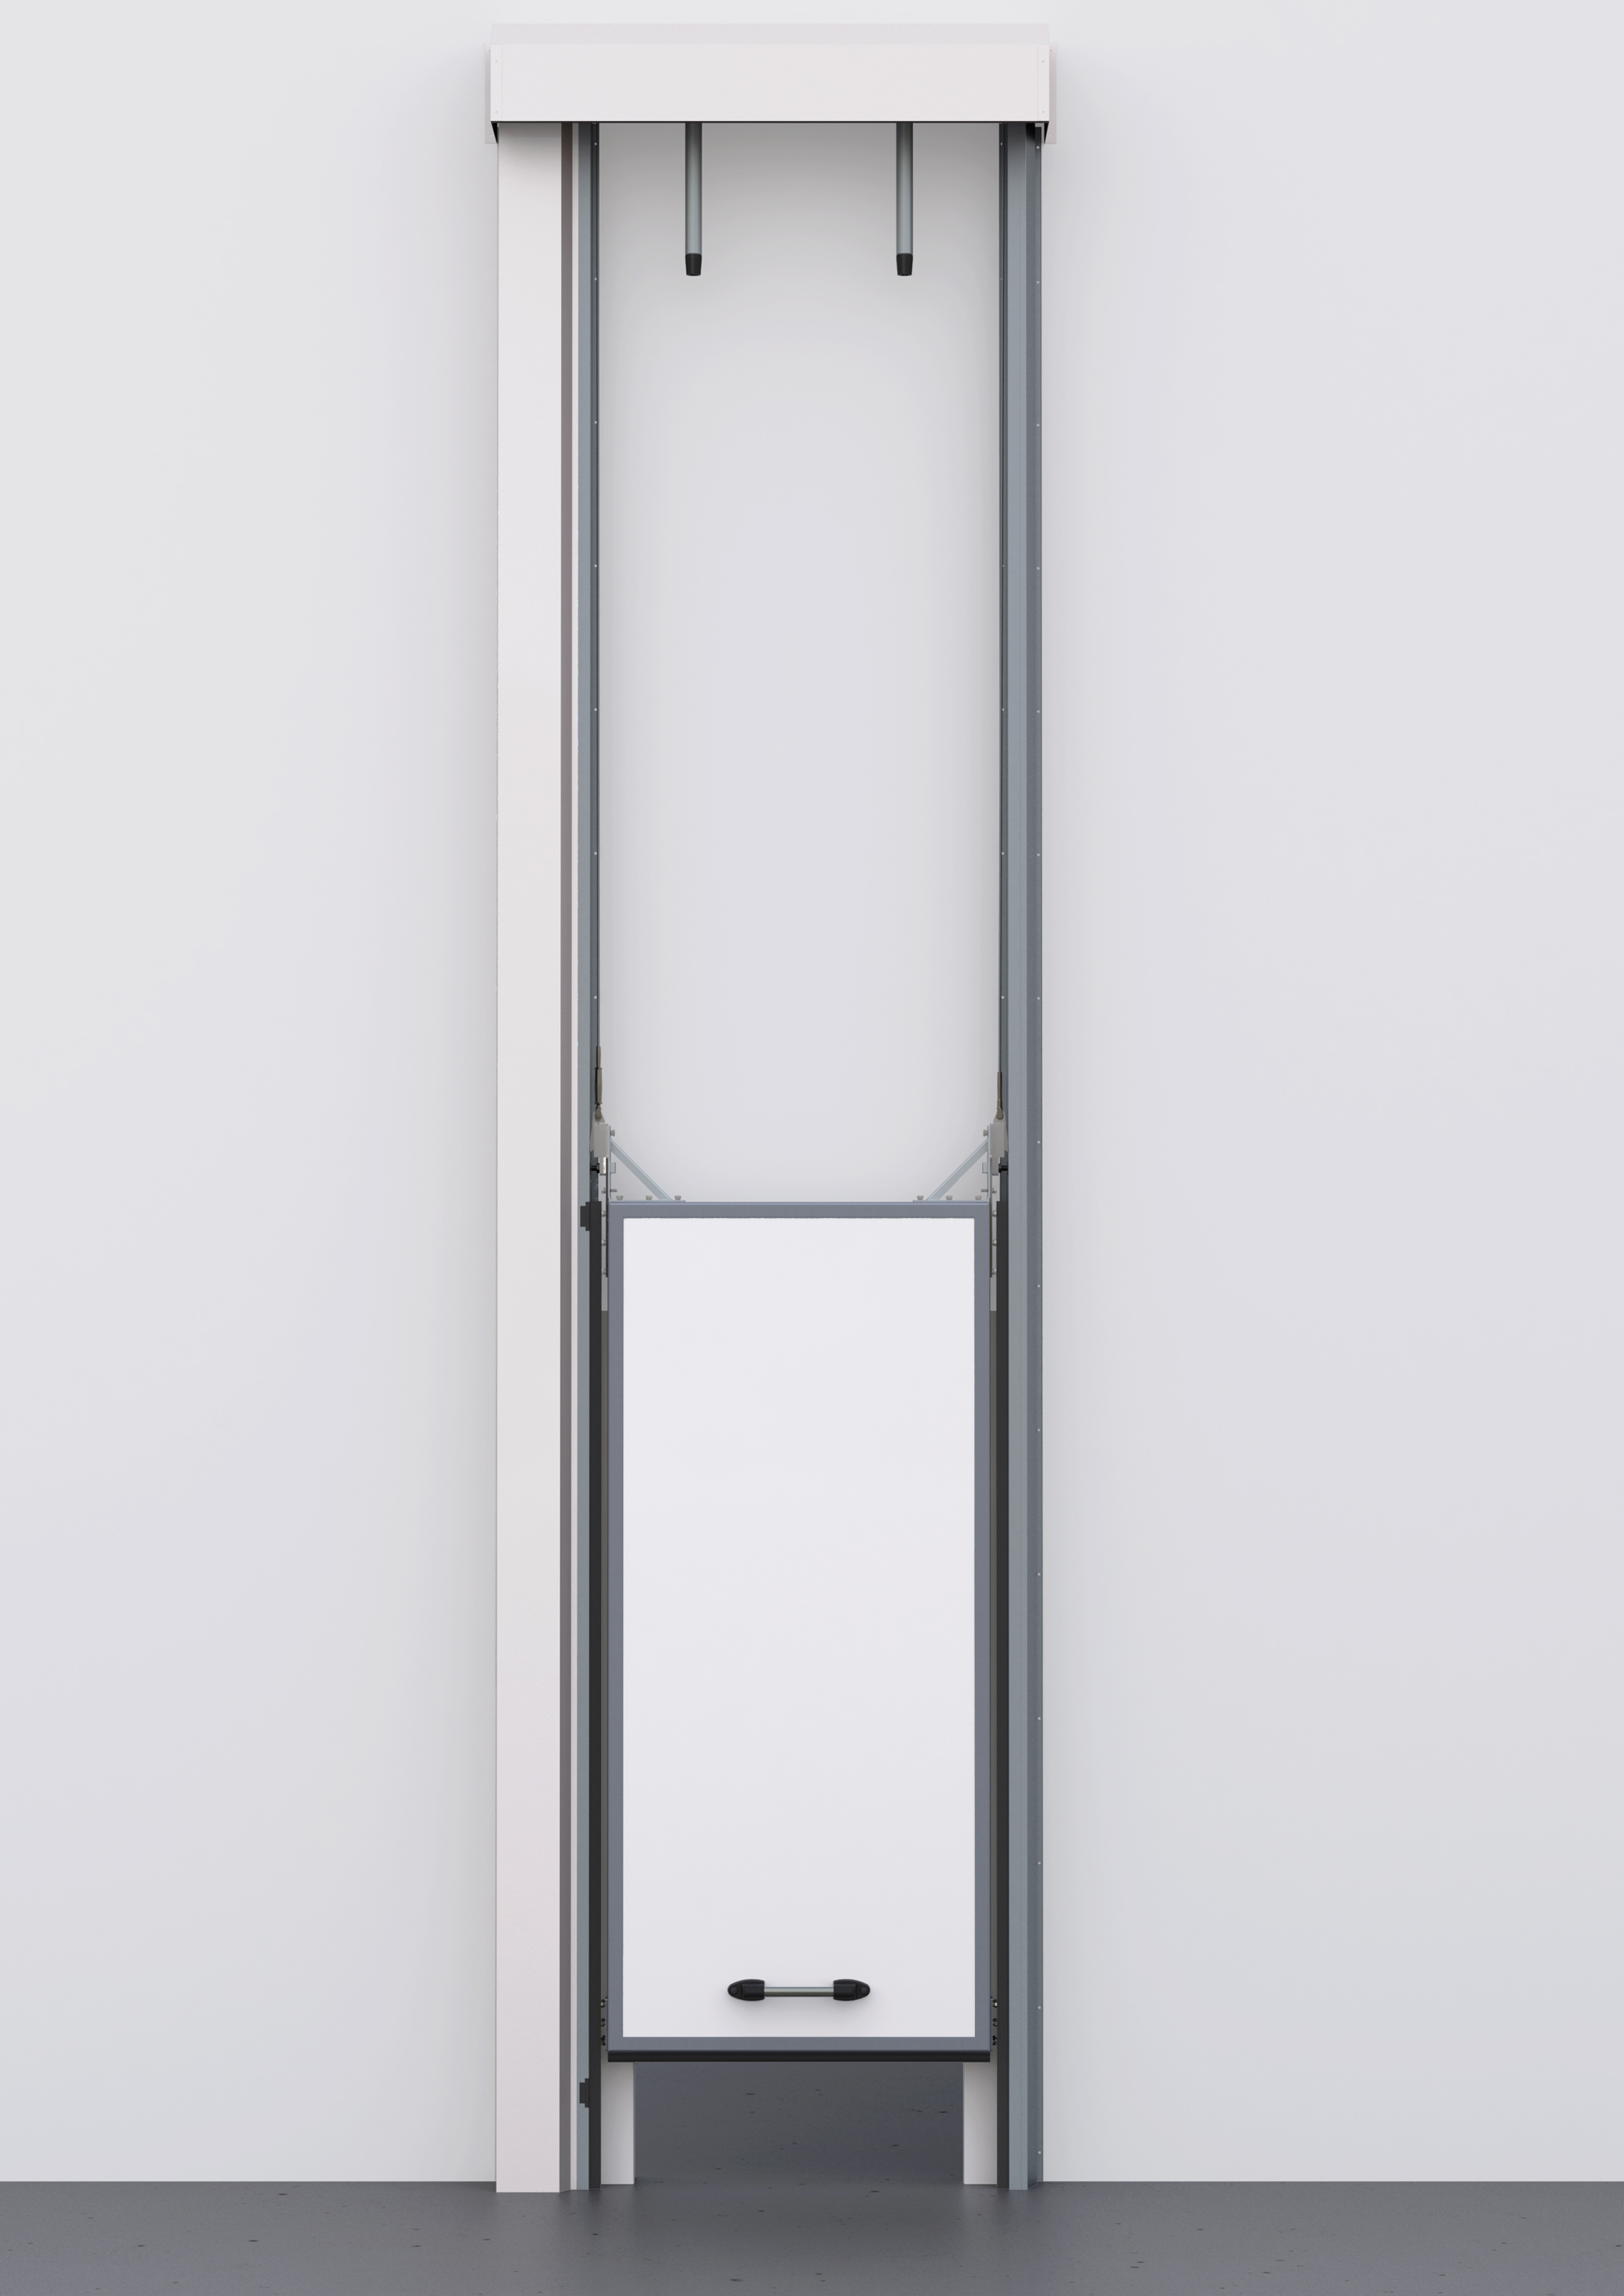 Vertical Sliding Door Tn Globe Panels, Vertical Sliding Panels For Sliding Glass Doors